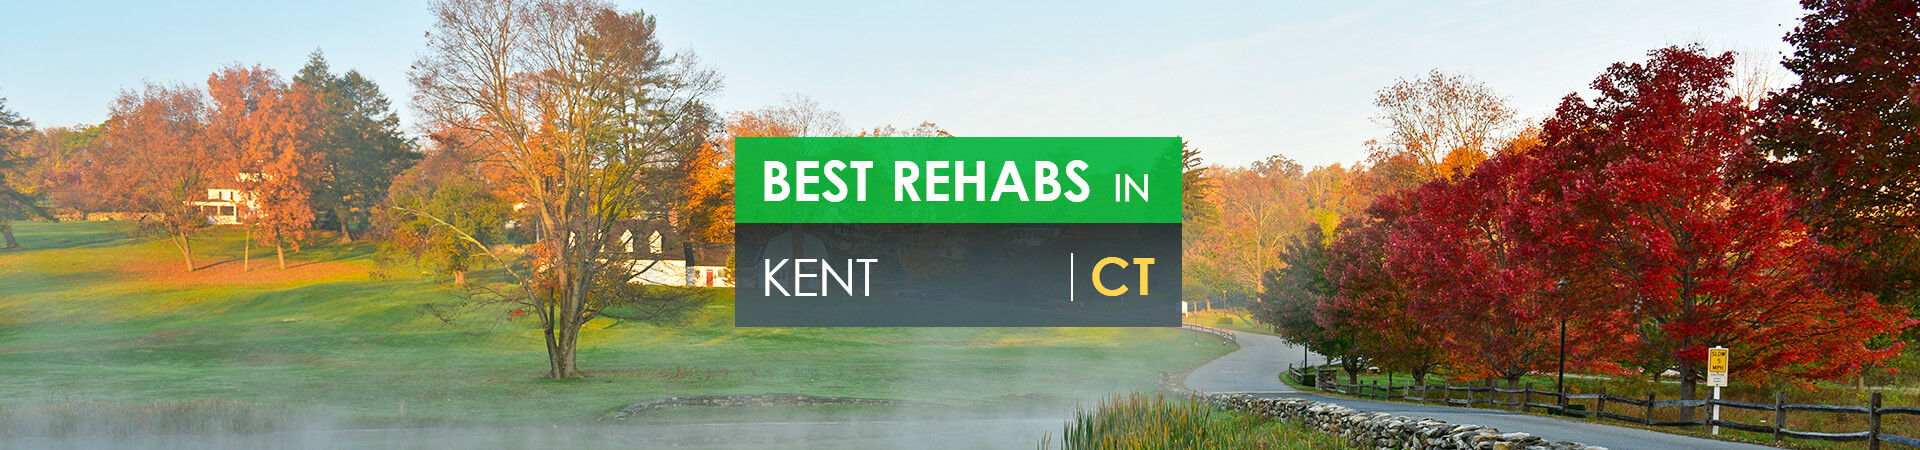 Best rehabs in Kent, CT